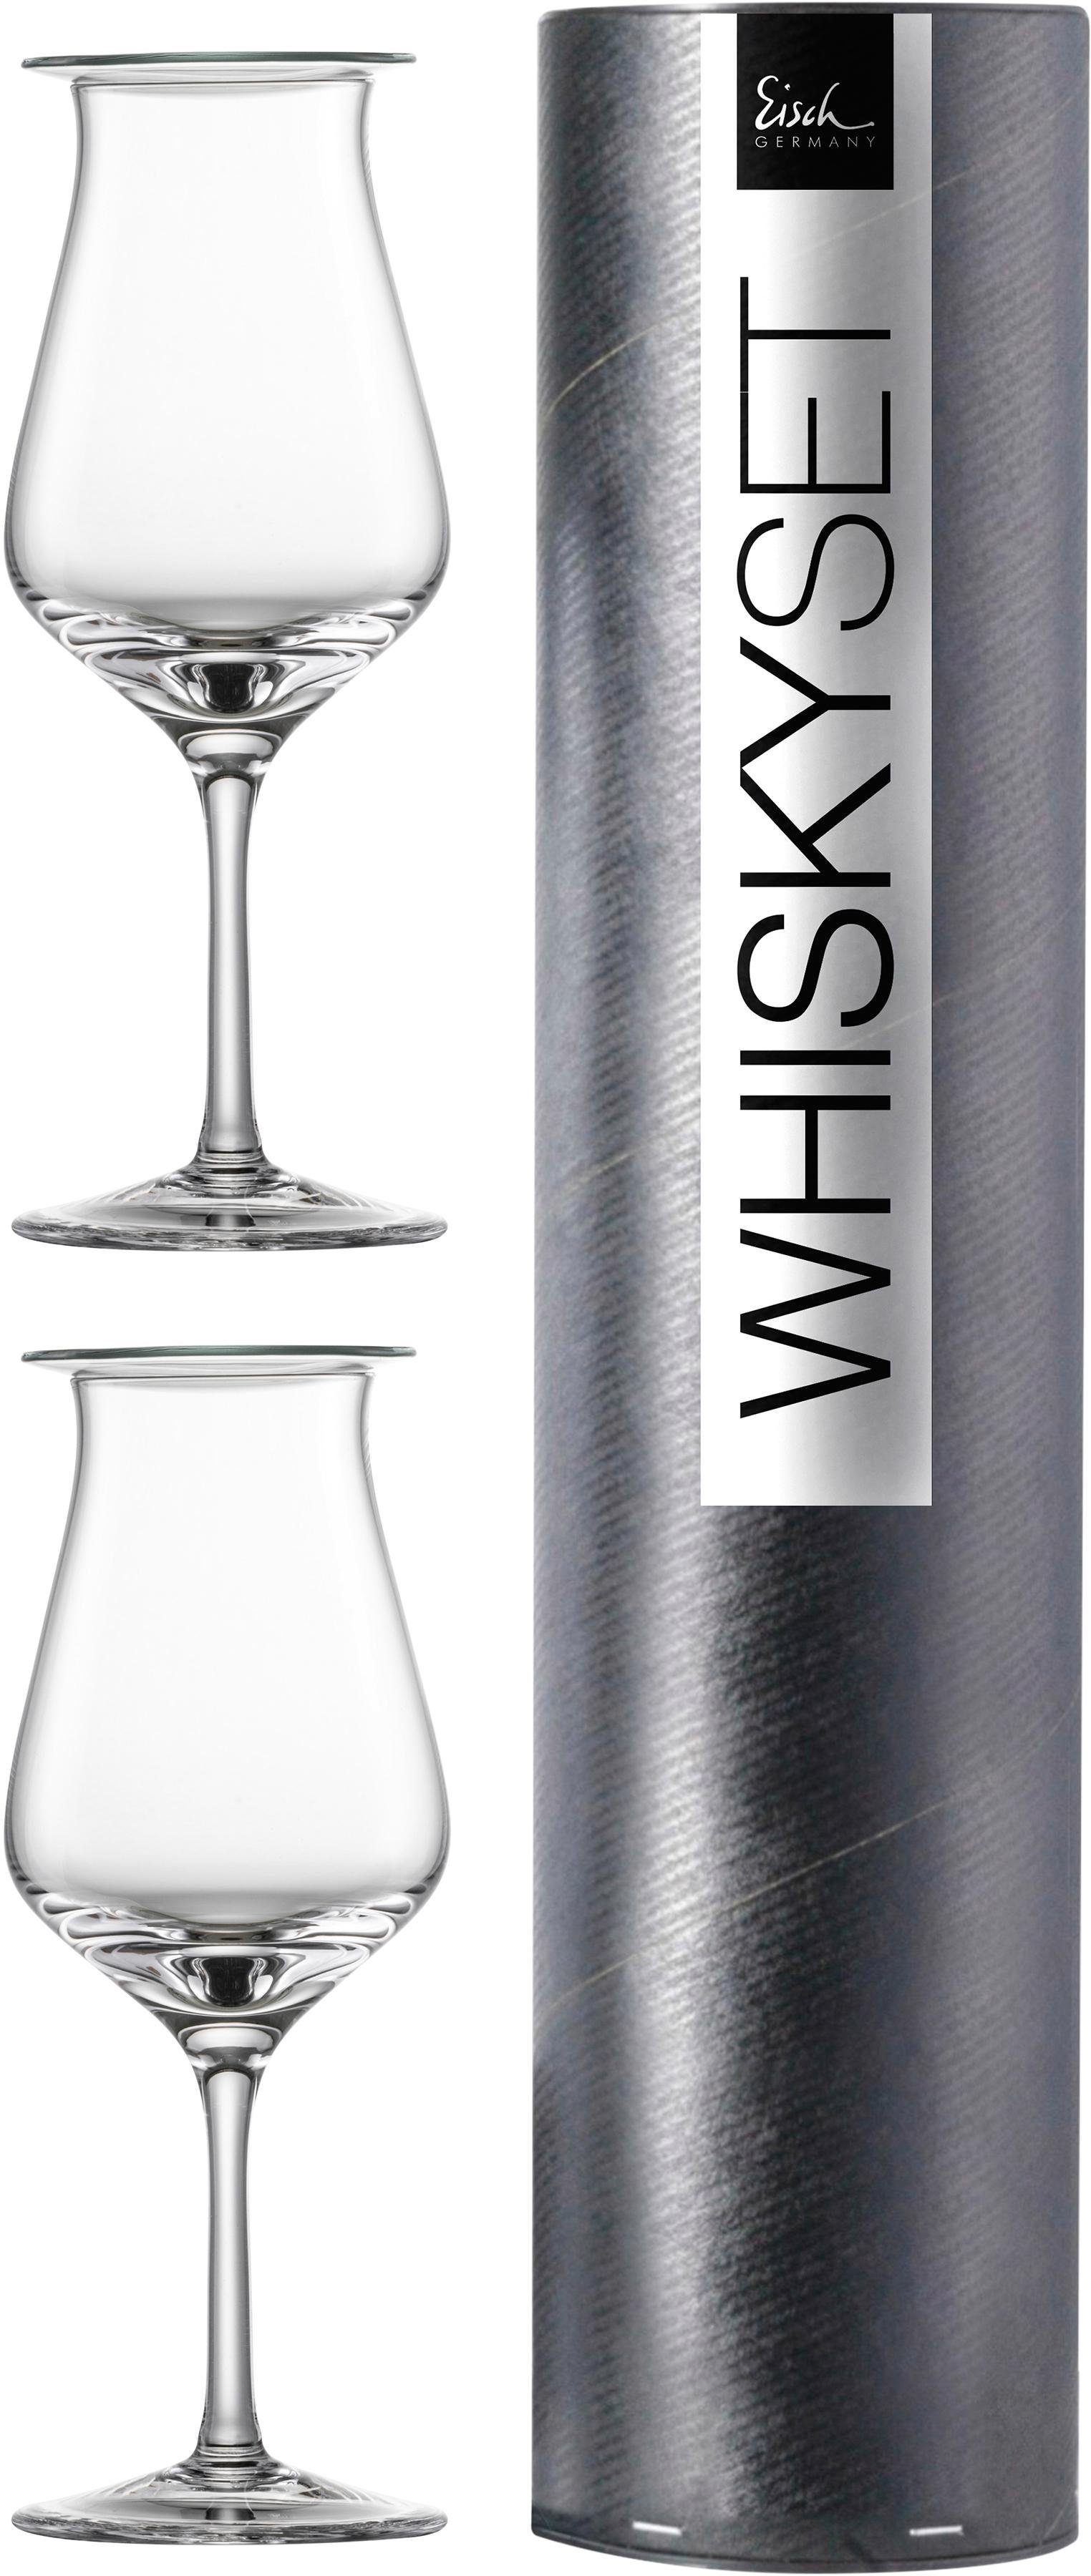 Popularität Eisch Whiskyglas Jeunesse, Kristallglas, bleifrei, 4-teilig ml, 160